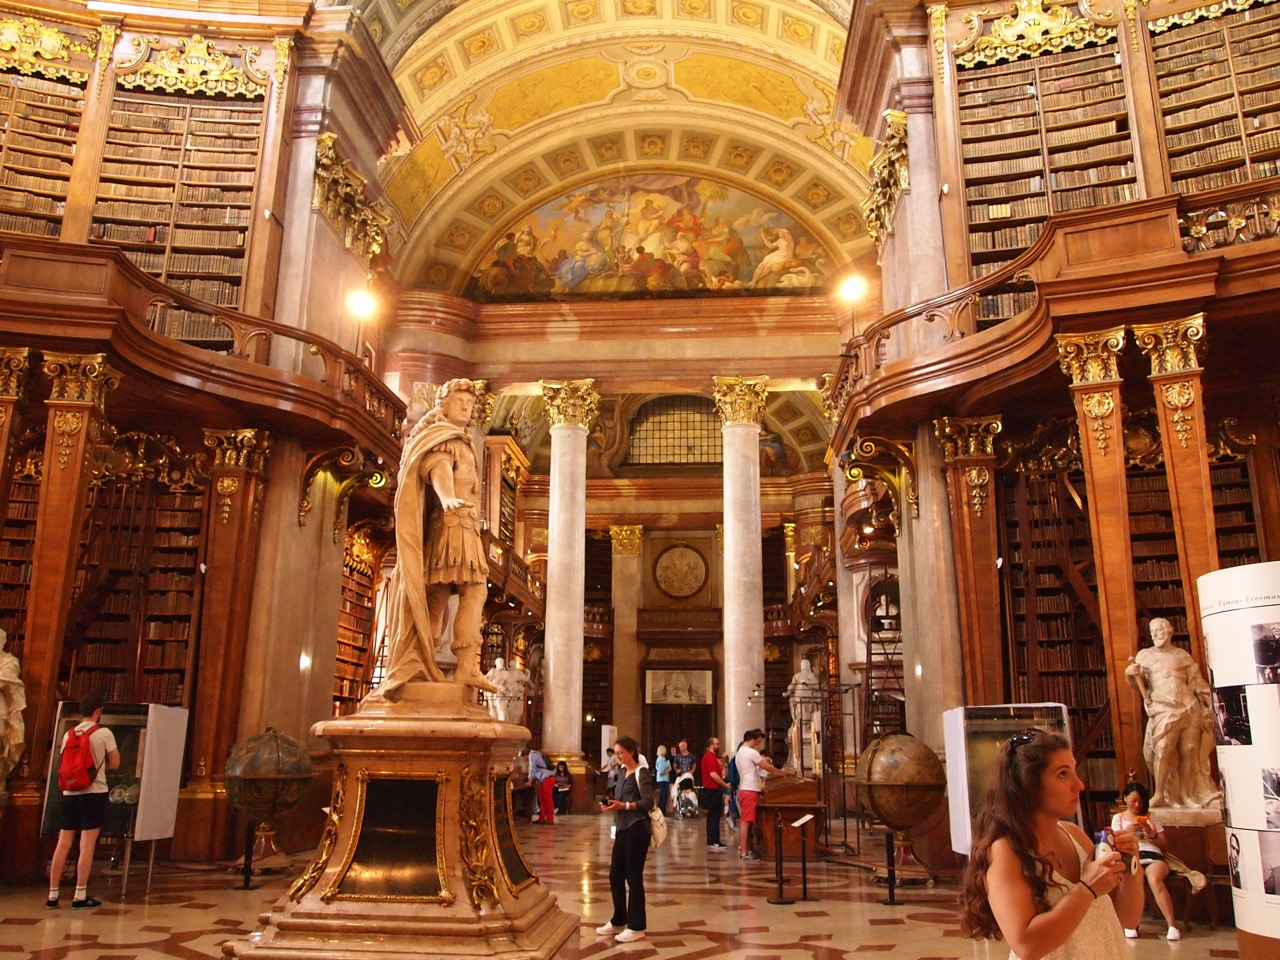 世界一美しい図書館 オーストリア国立図書館 は映画 美女と野獣 の世界 ハイヒールで世界を歩く